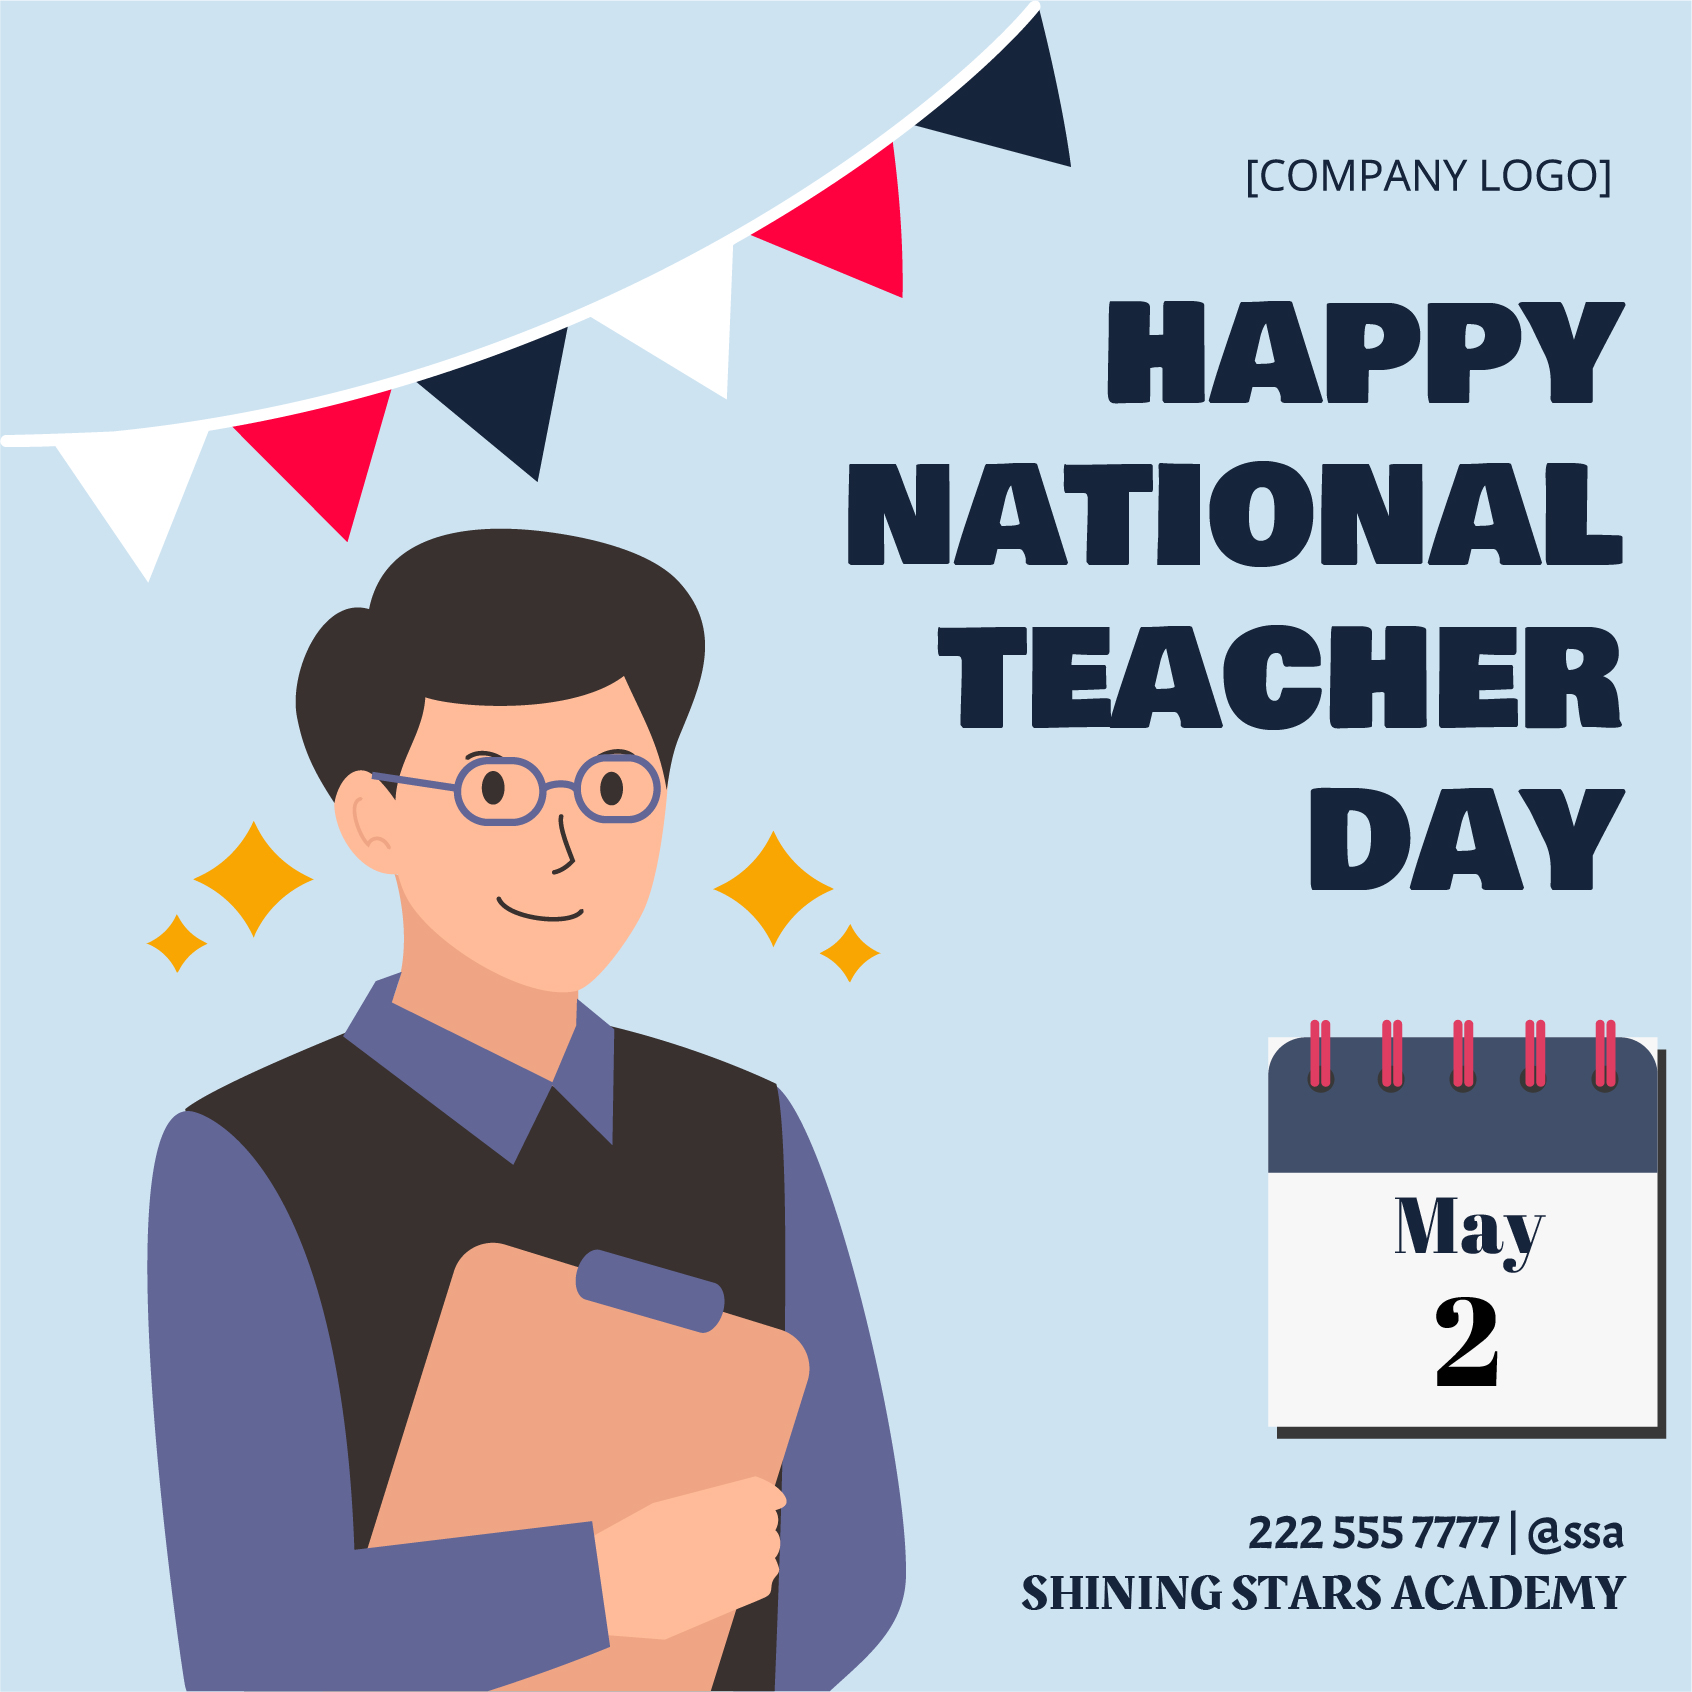 Free National Teacher Day Poster Vector in Illustrator, PSD, EPS, SVG, JPG, PNG